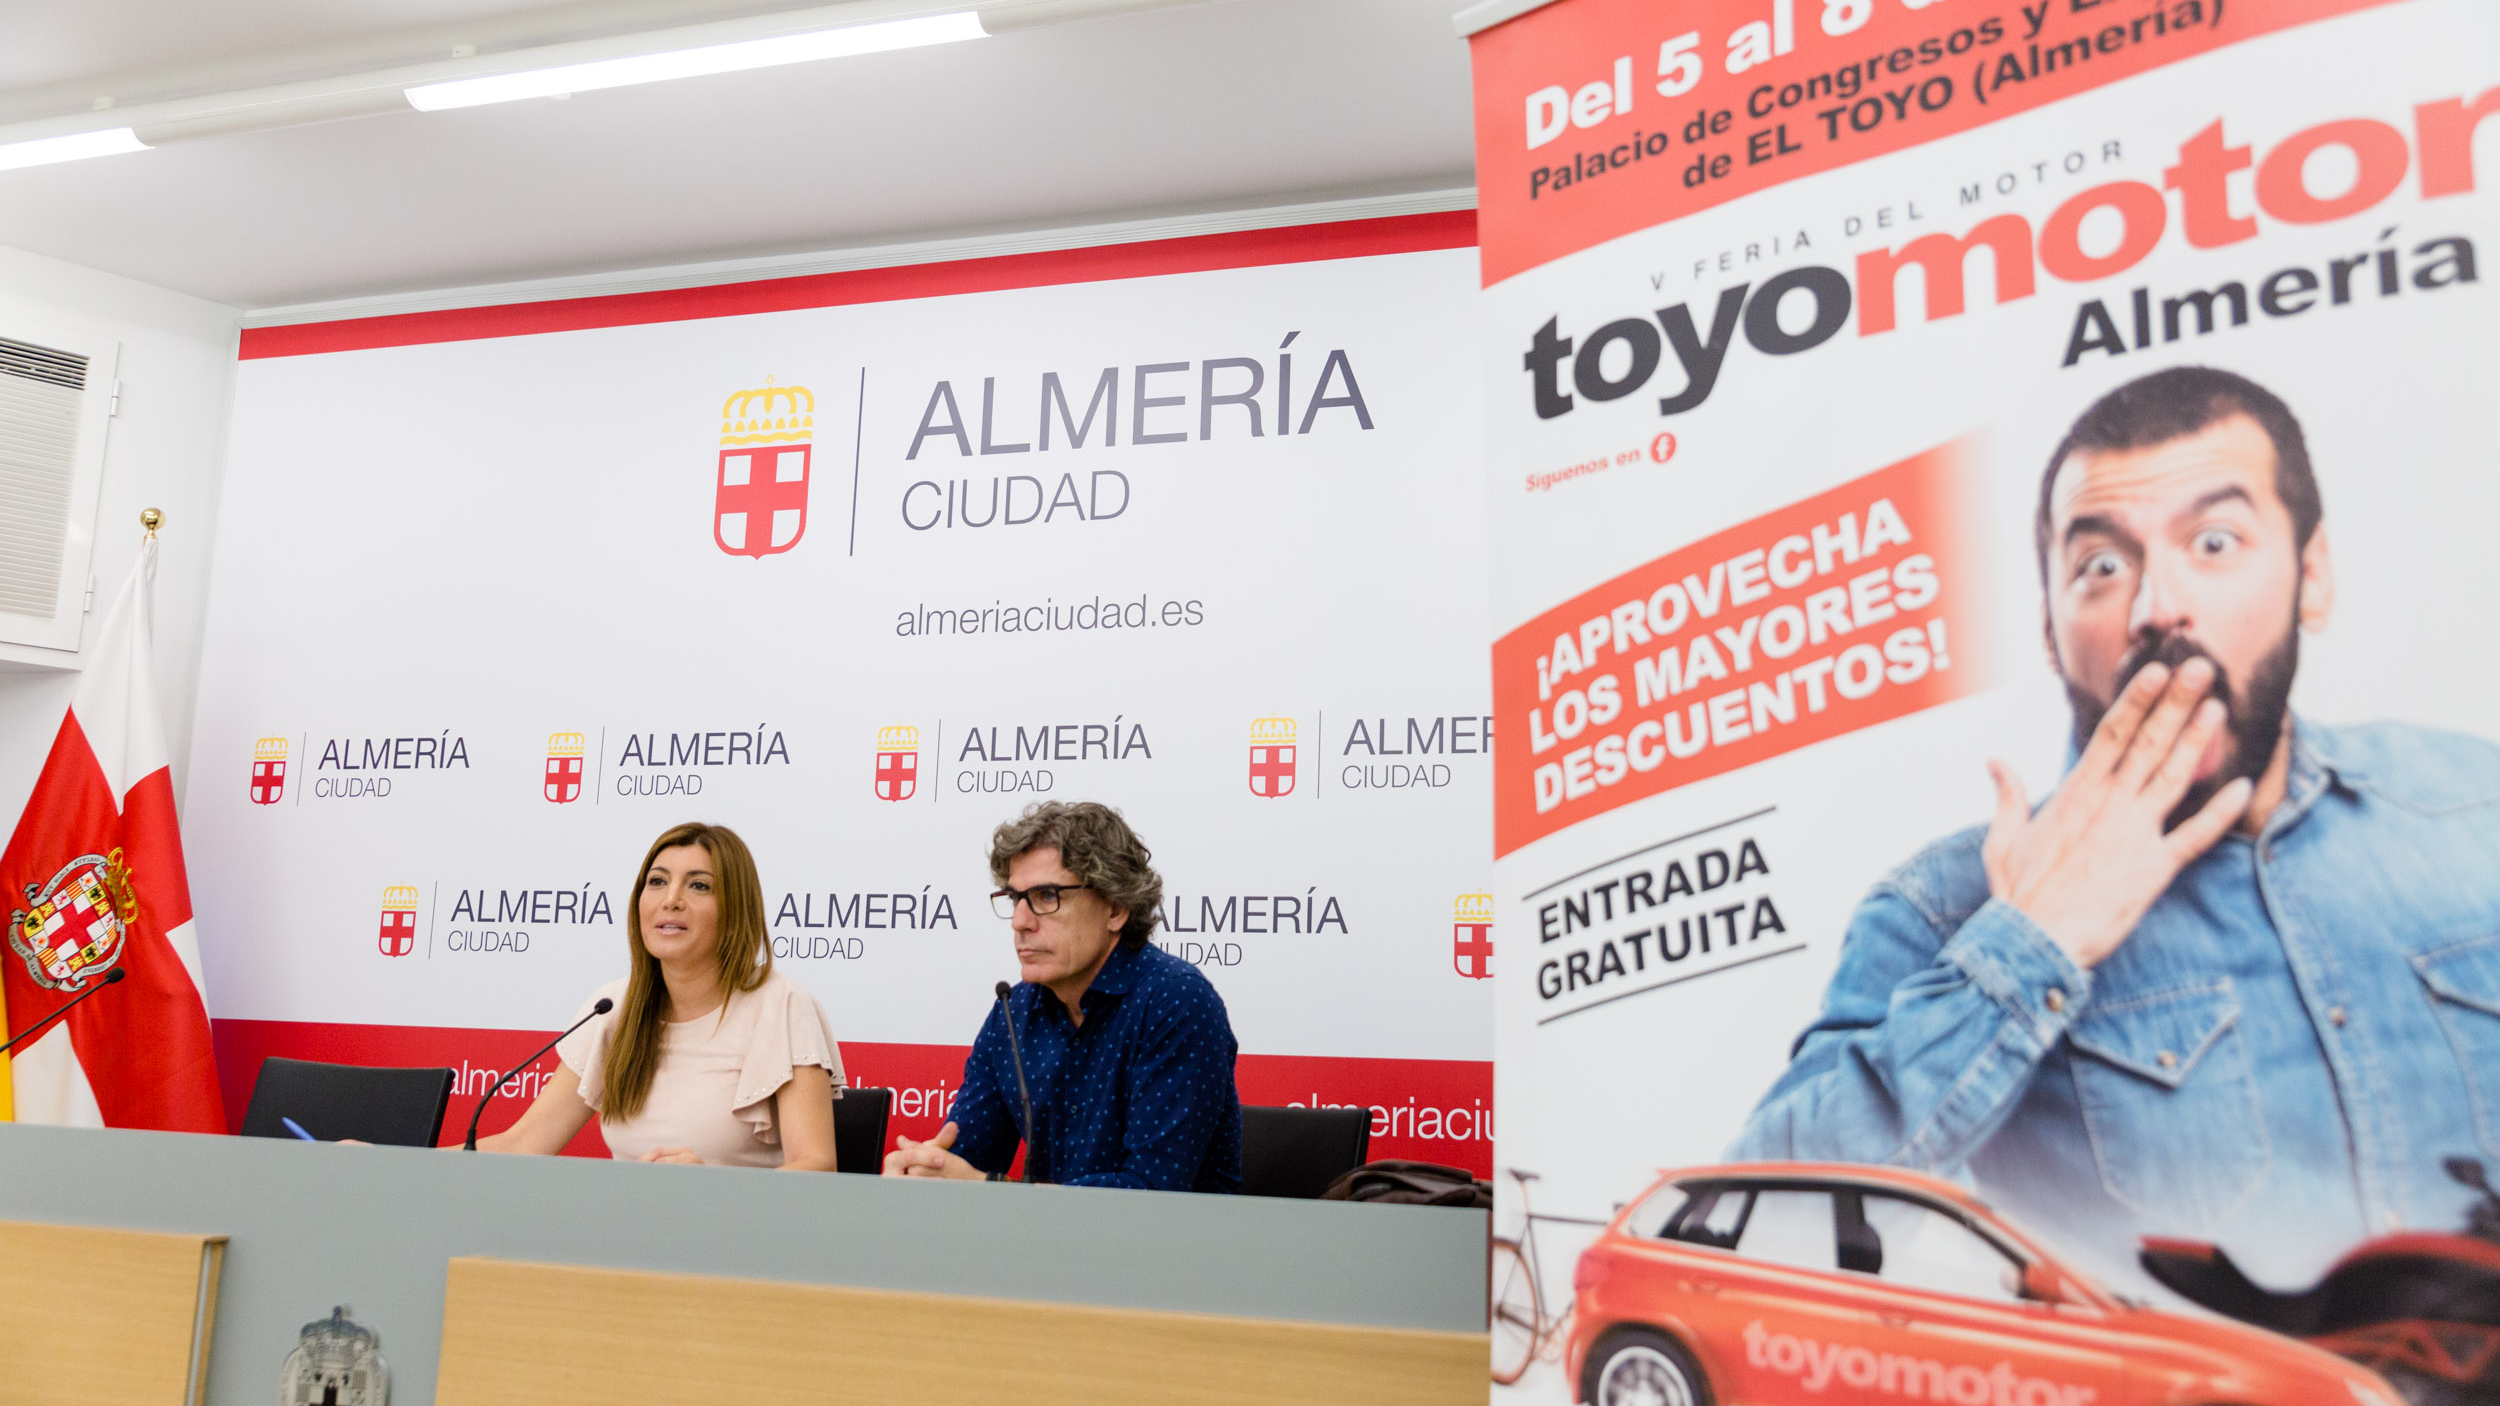 Presentación ToyoMotor1 uai - Turismo Almería